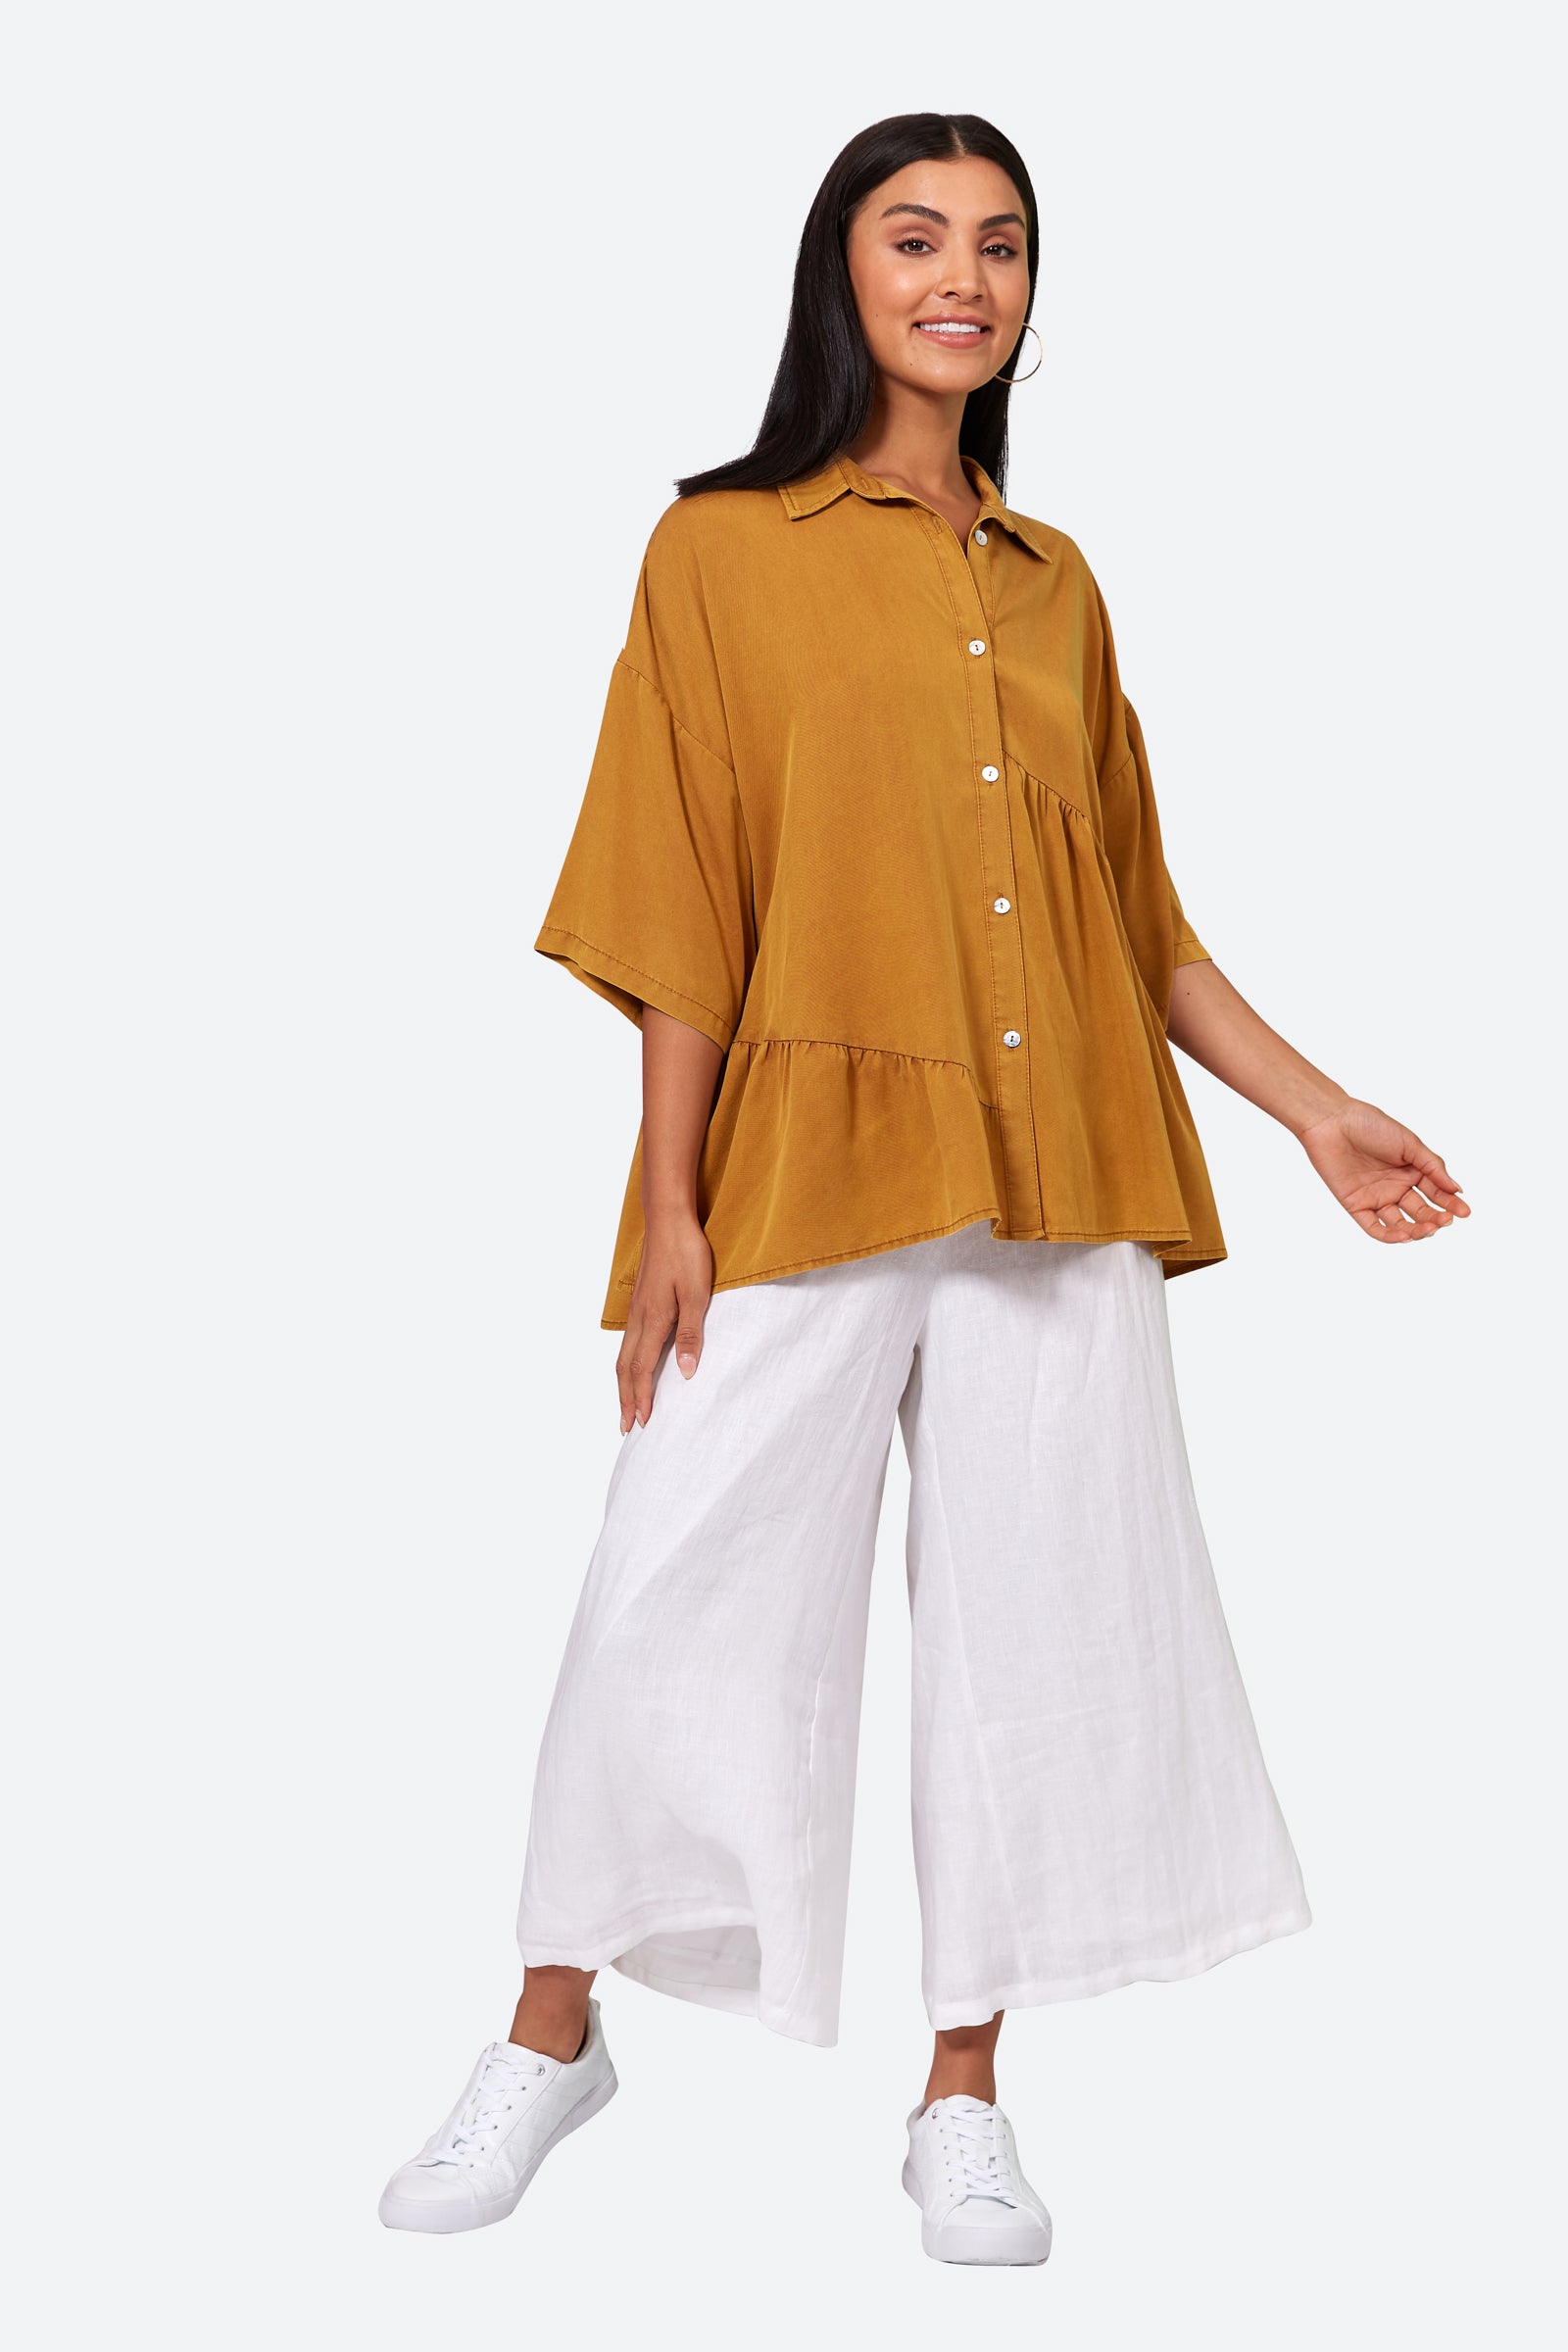 Elan Shirt - Honey - eb&ive Clothing - Shirt One Size